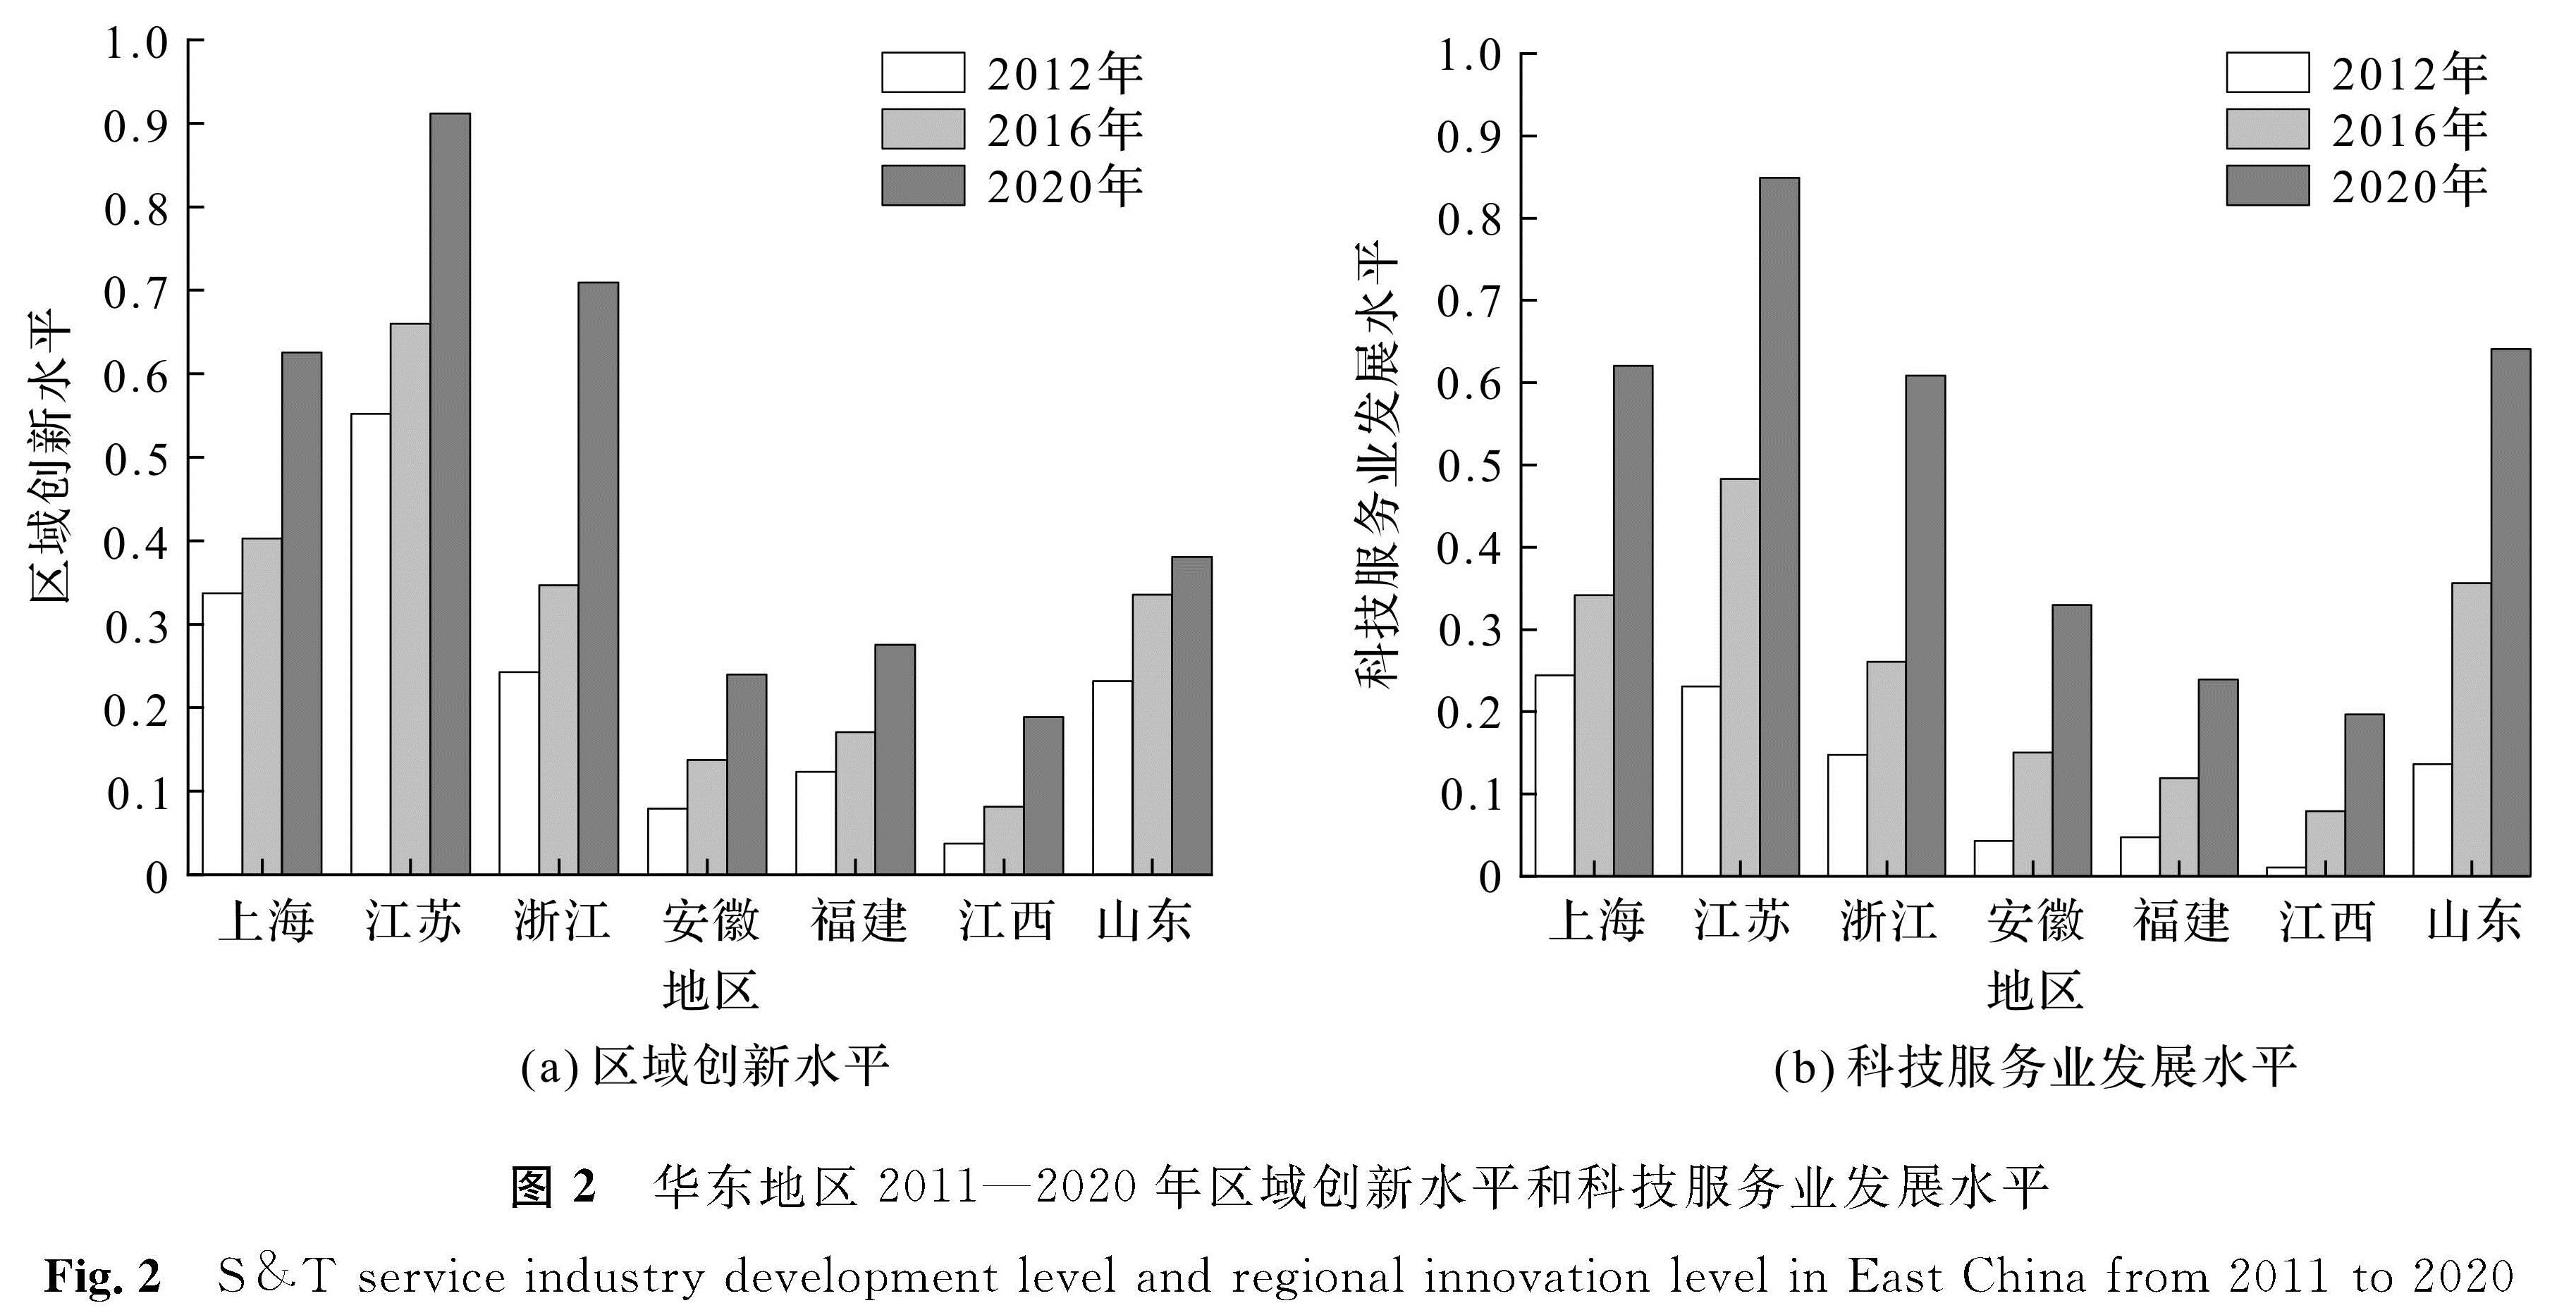 图2 华东地区2011—2020年区域创新水平和科技服务业发展水平<br/>Fig.2 S & T service industry development level and regional innovation level in East China from 2011 to 2020